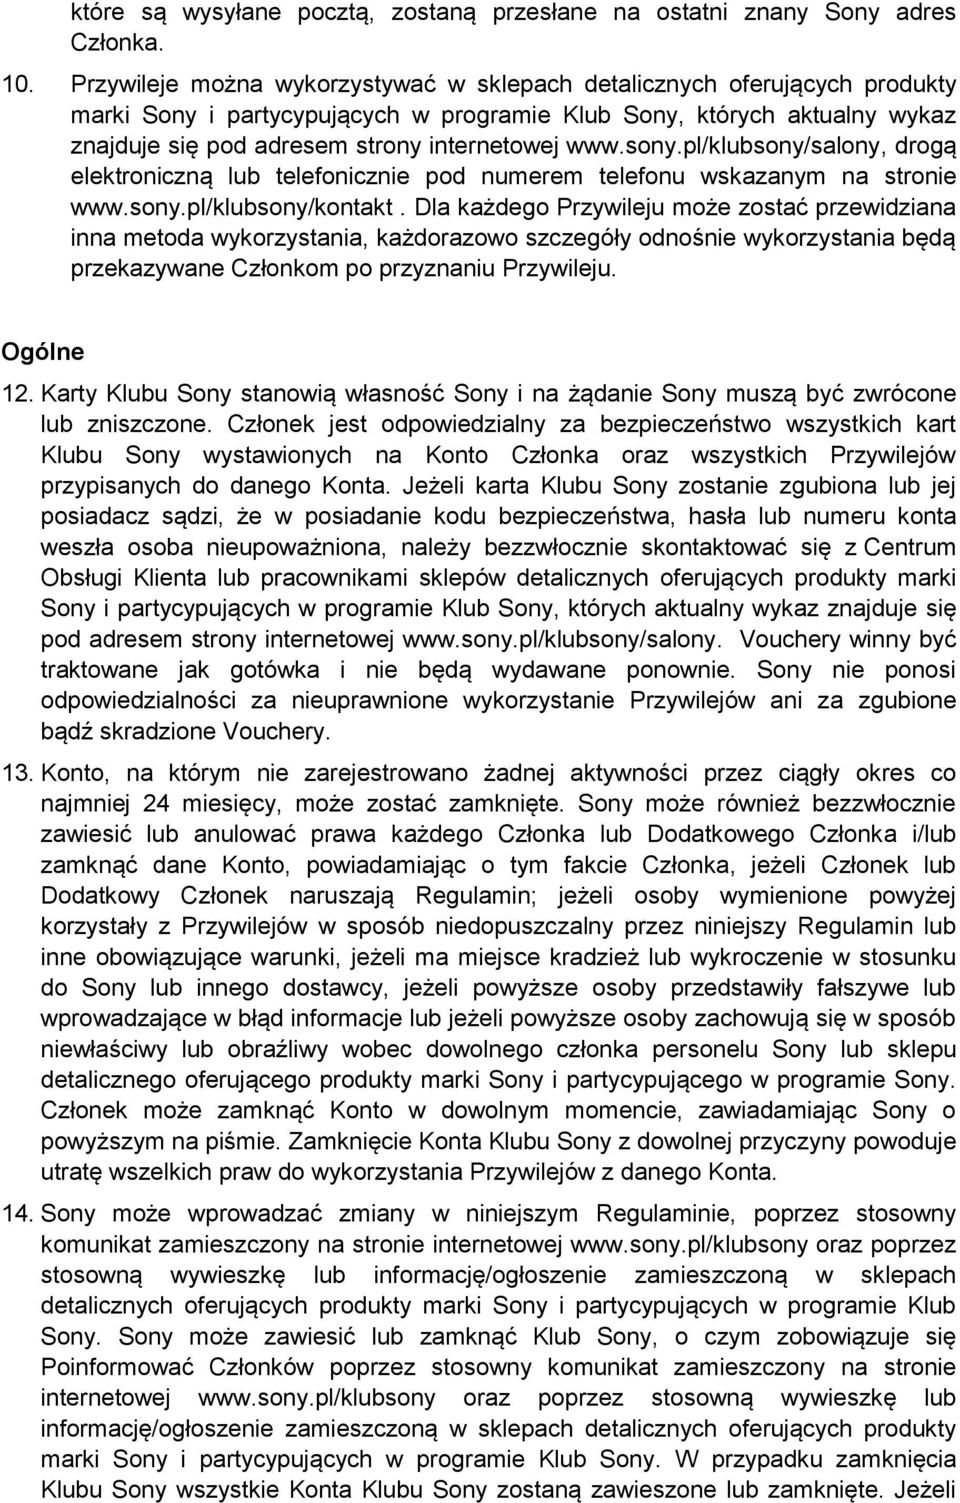 sony.pl/klubsony/salony, drogą elektroniczną lub telefonicznie pod numerem telefonu wskazanym na stronie www.sony.pl/klubsony/kontakt.